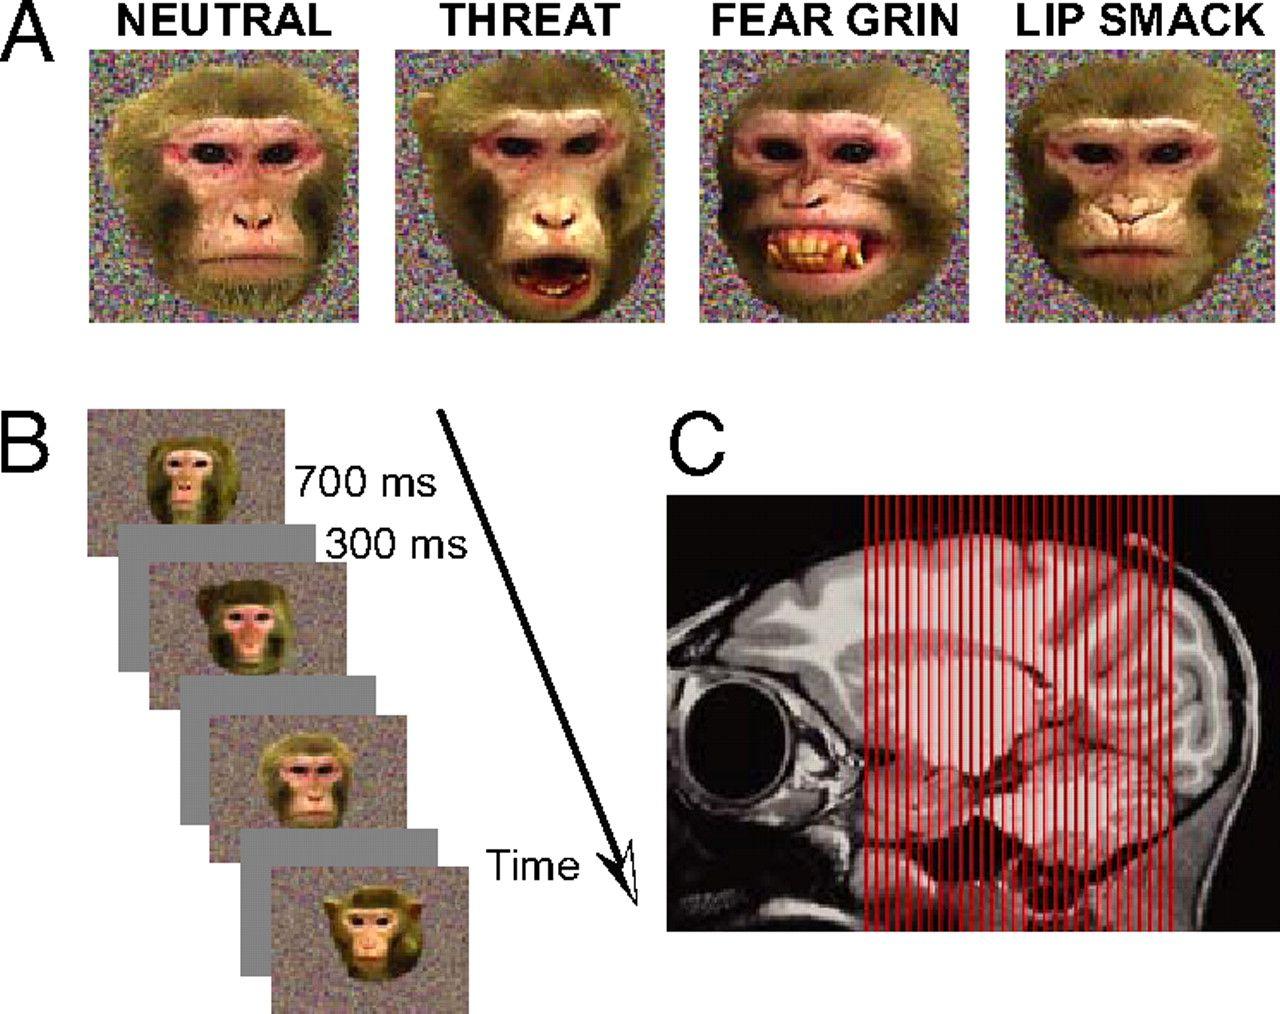 Macaque facial expressions